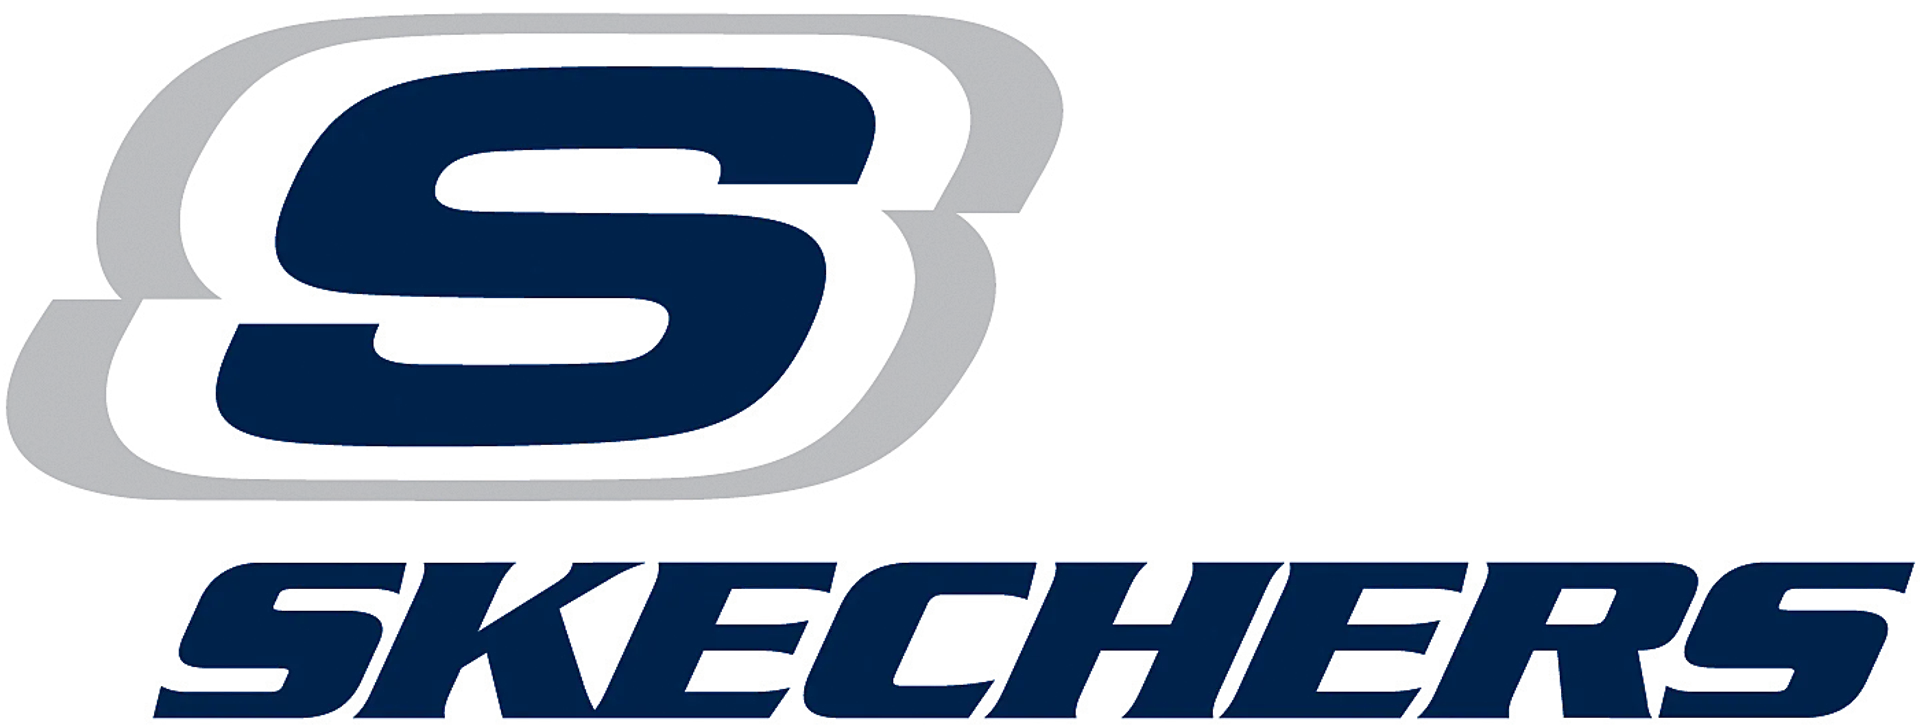 SKECHERS logo